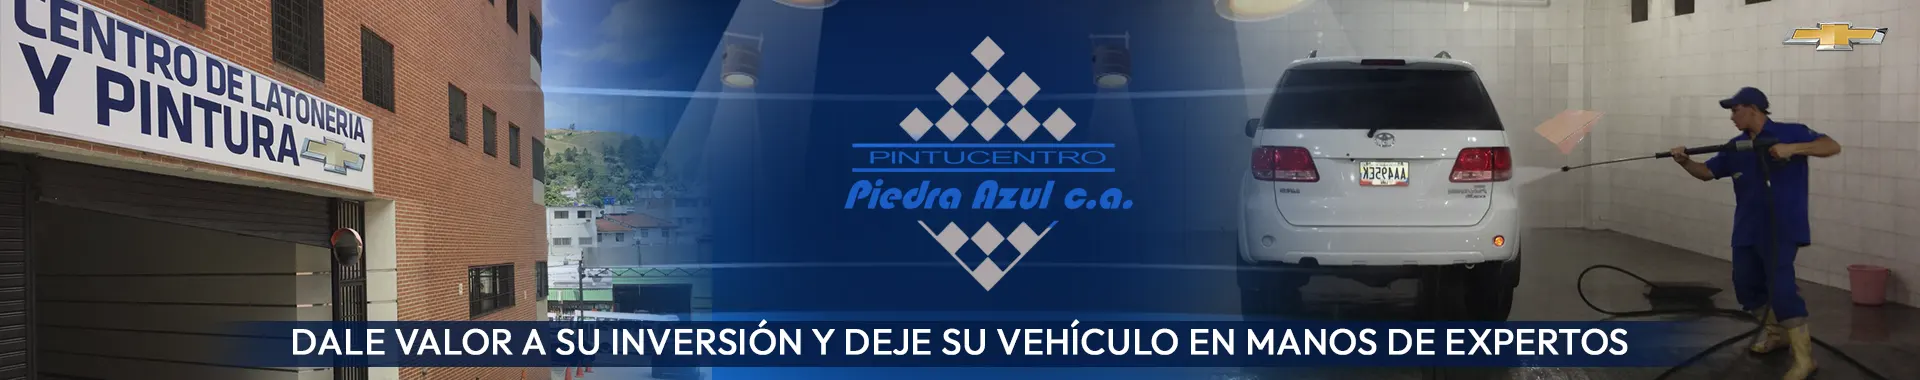 Imagen 2 del perfil de Pintucentro Piedra Azul